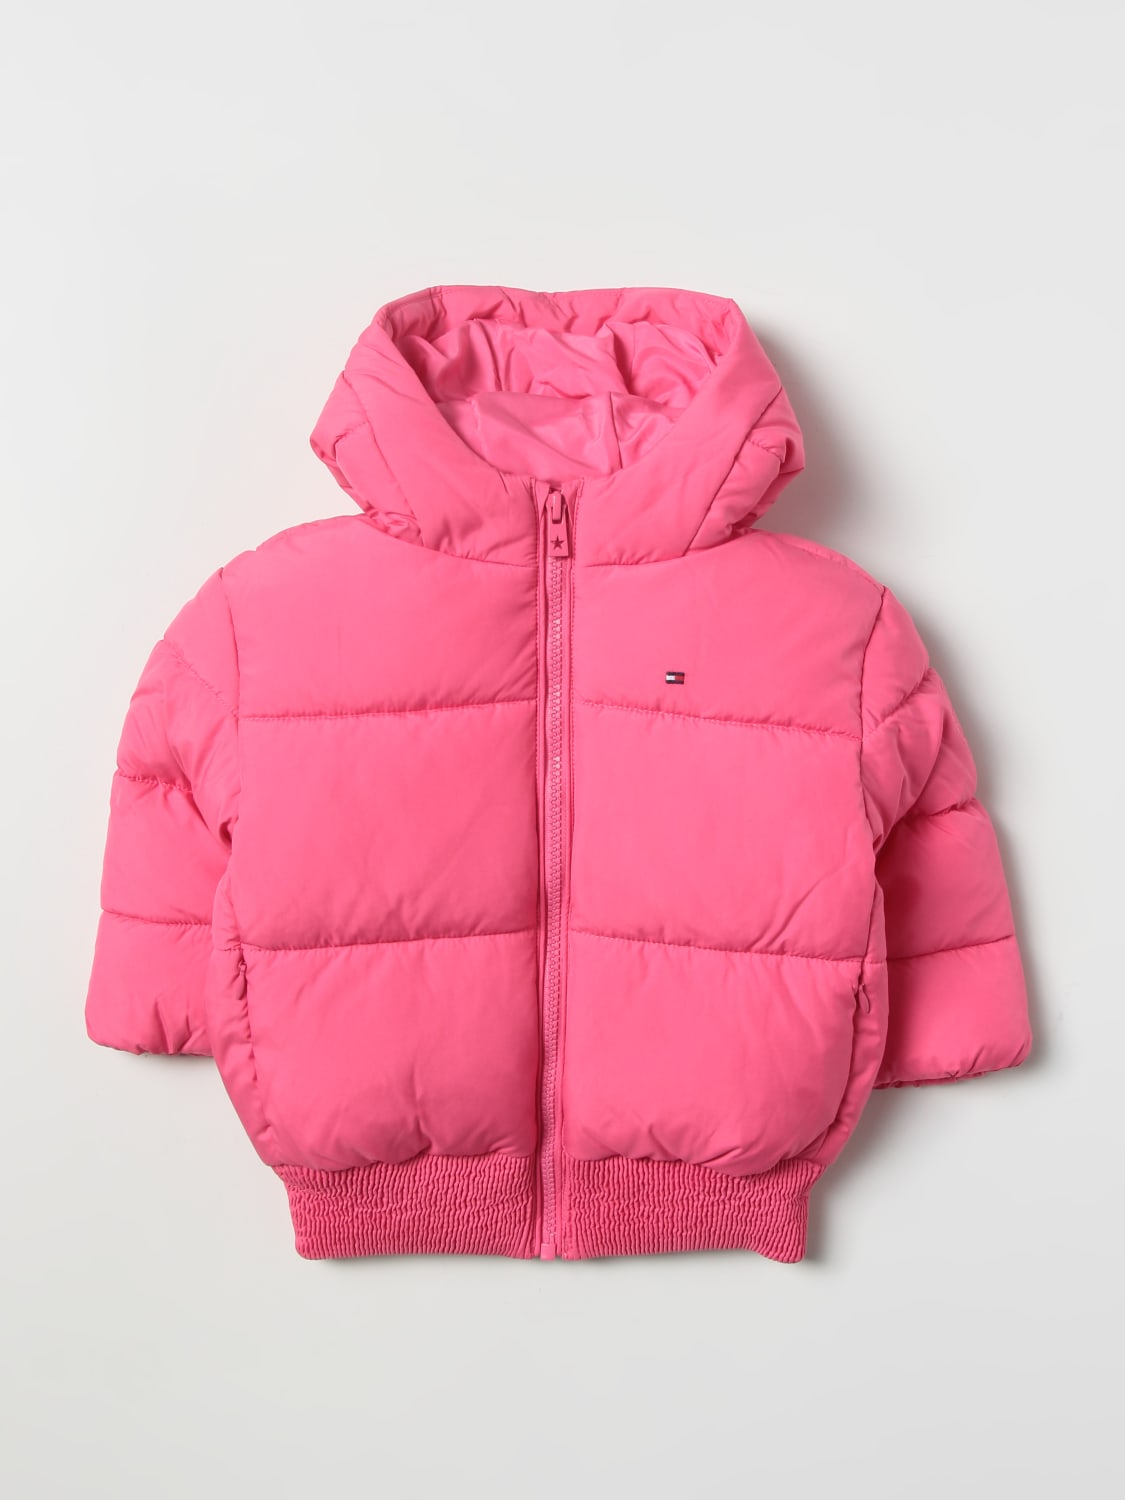 Tommy Hilfiger Outlet: down jacket with - Pink | Tommy Hilfiger jacket KG0KG06689 online at GIGLIO.COM